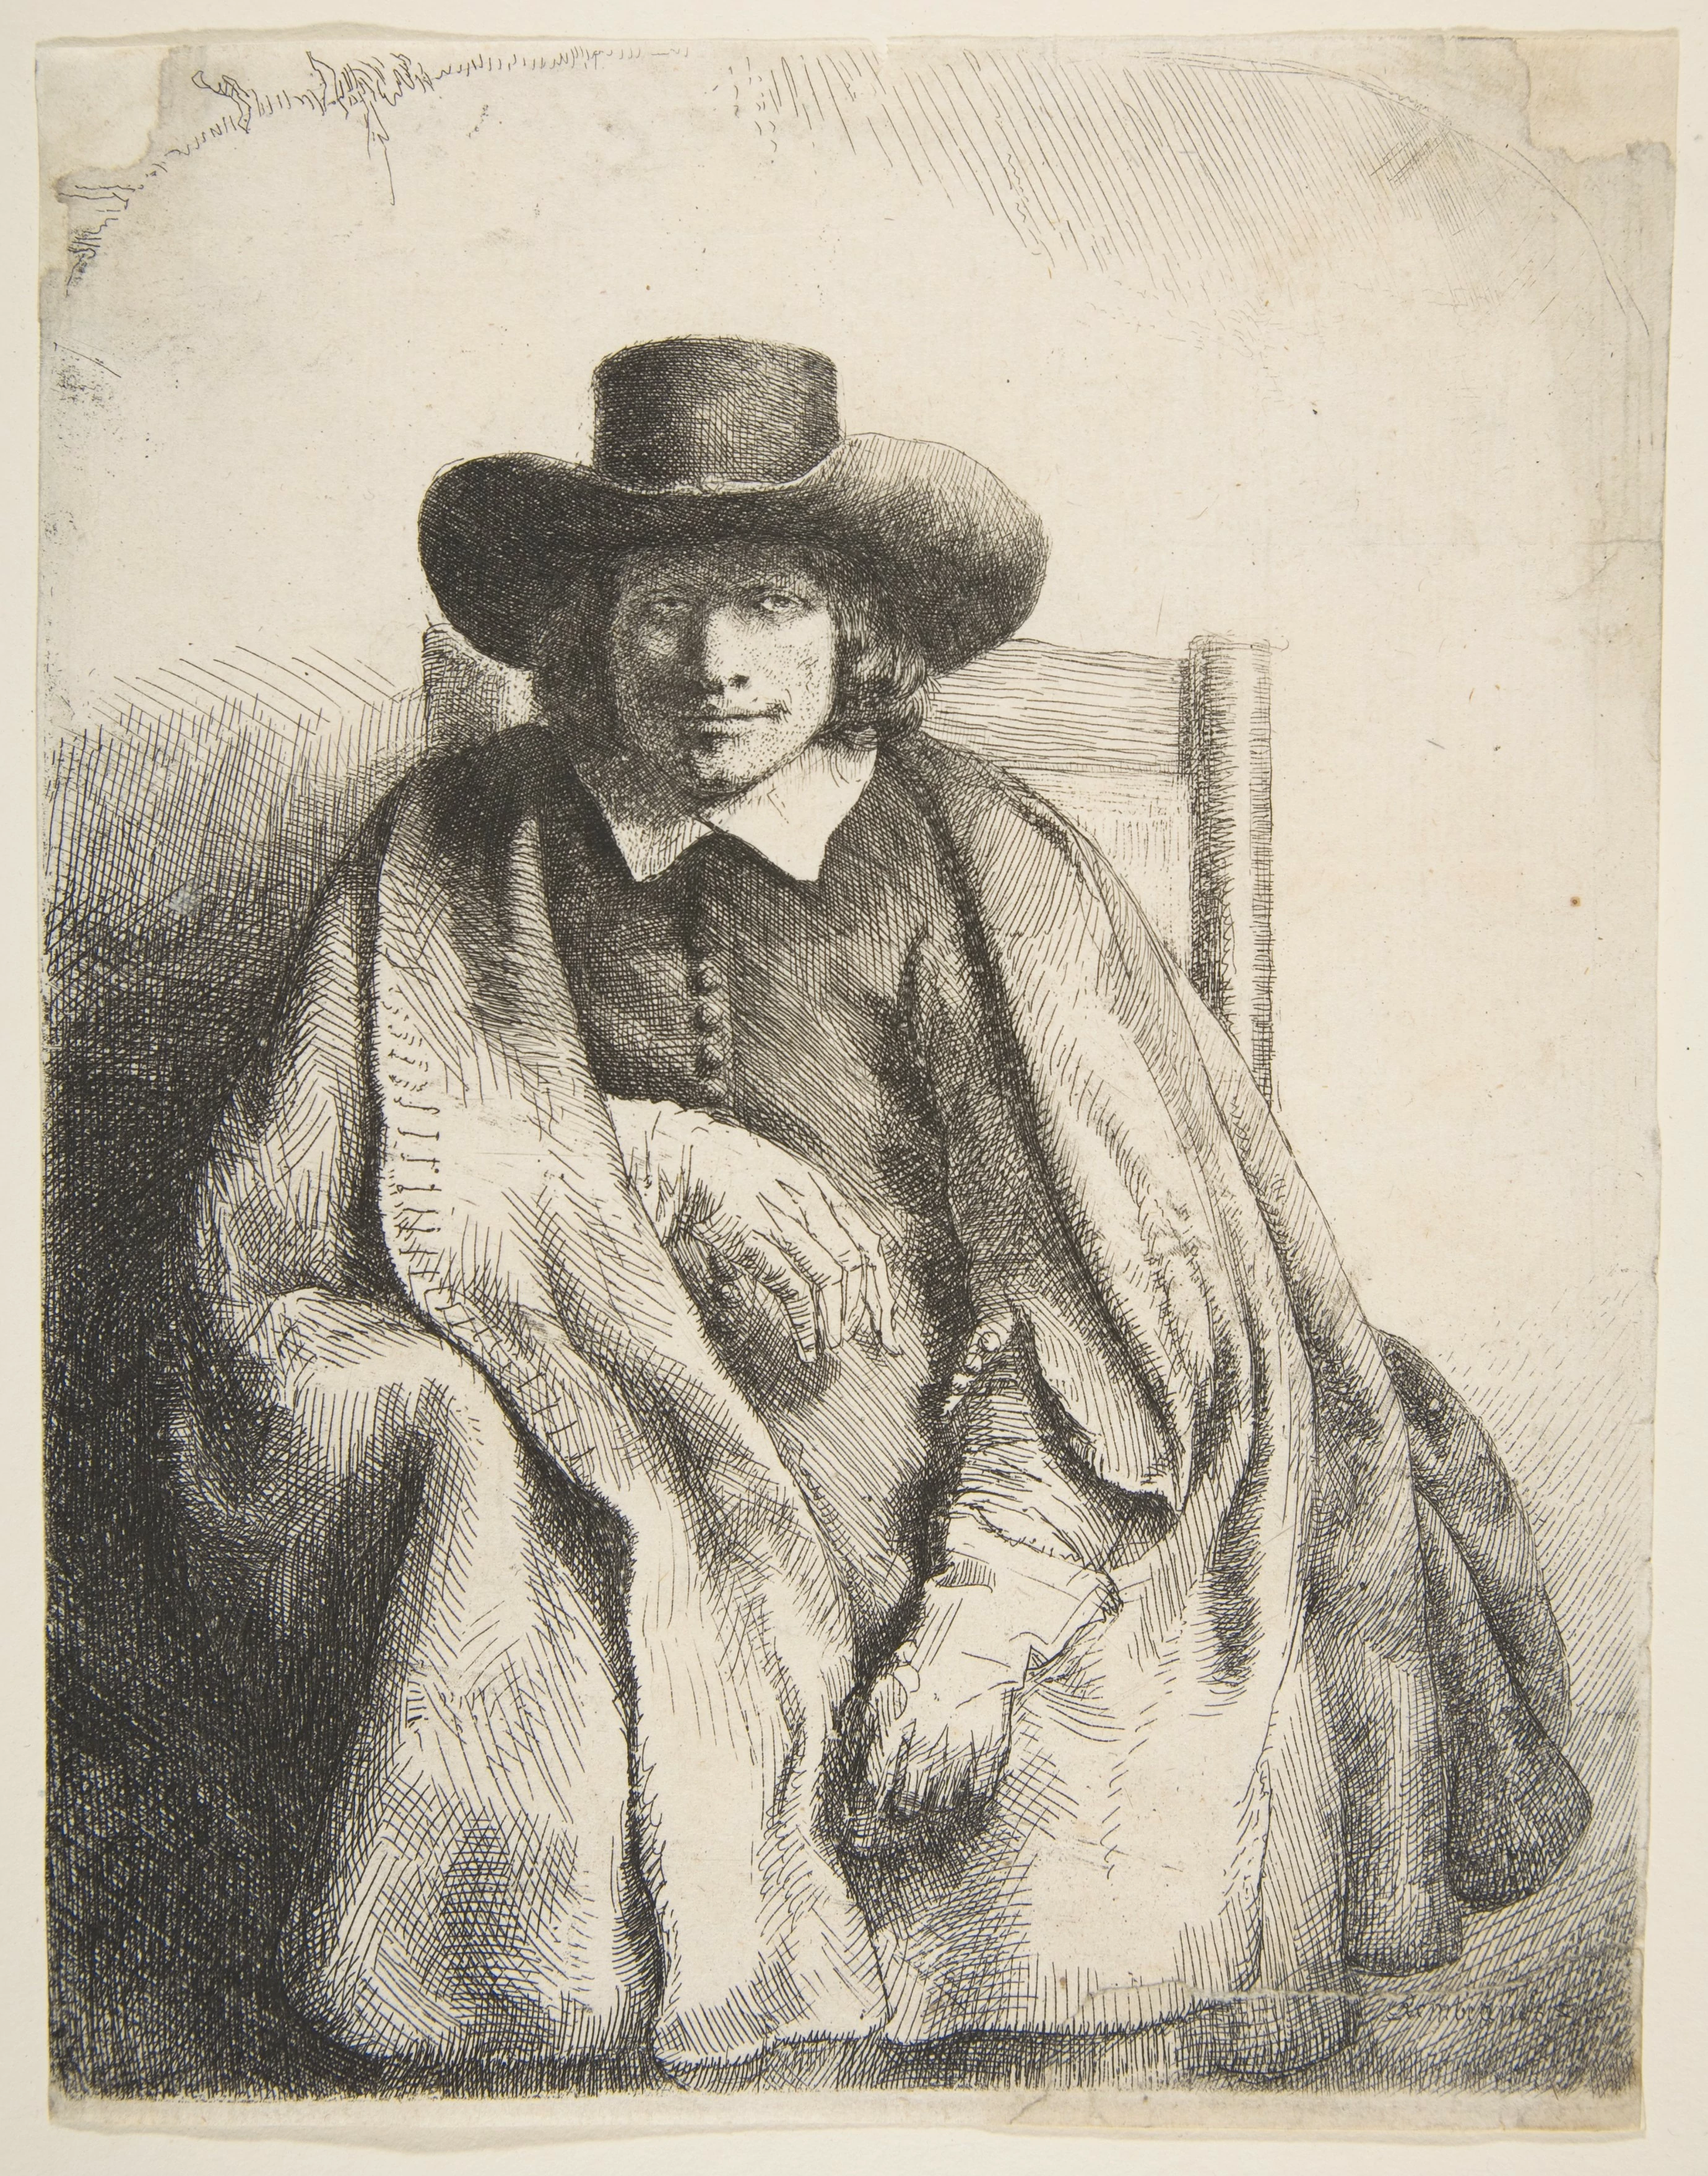 Clement de Jonghe, Printseller, Rembrandt van Rijn